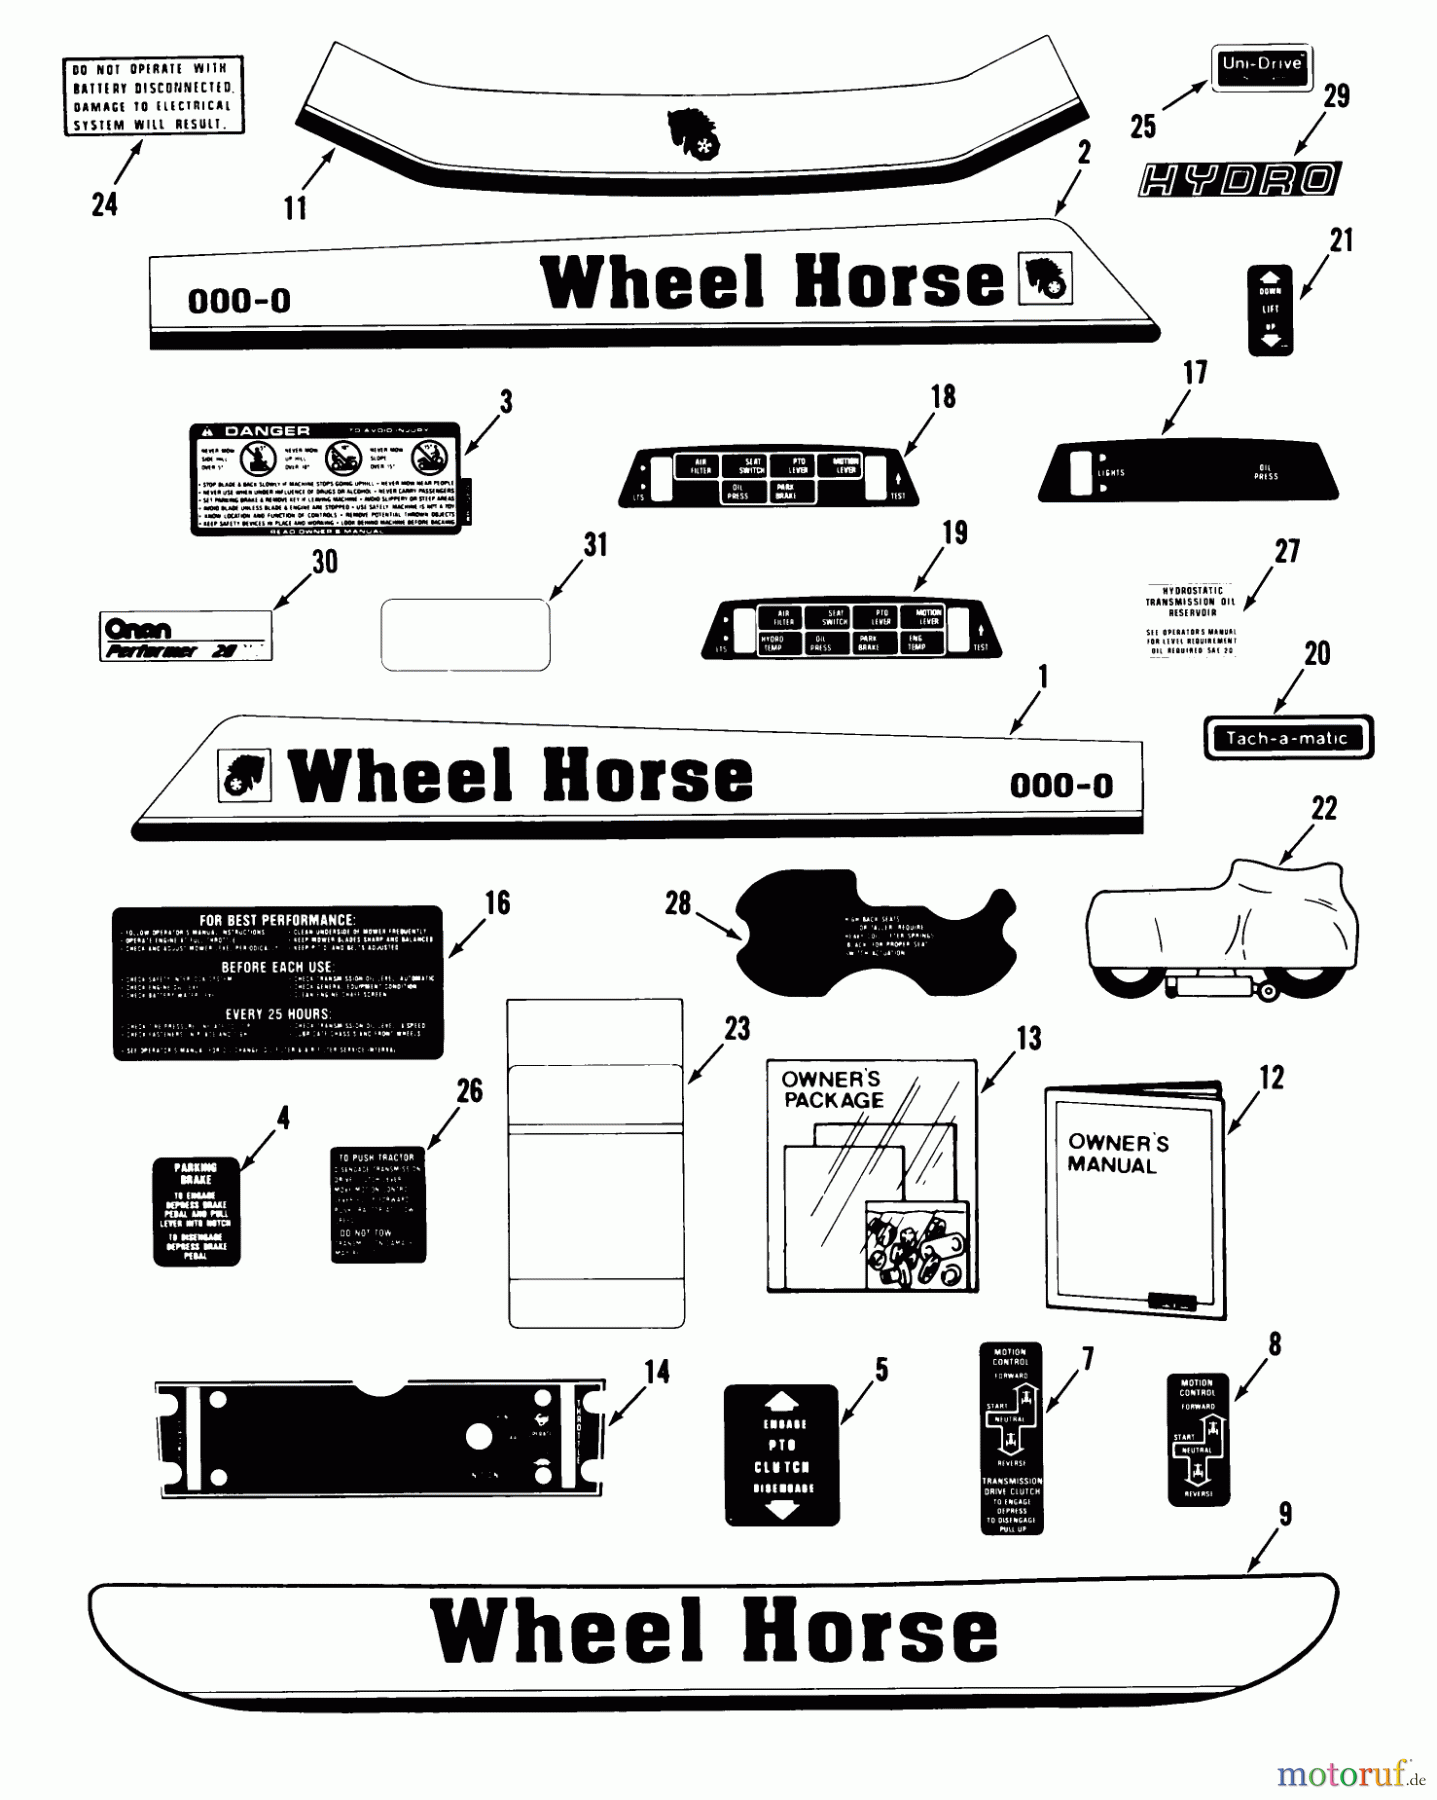  Toro Neu Mowers, Lawn & Garden Tractor Seite 1 31-20OE02 (520-H) - Toro 520-H Garden Tractor, 1989 DECALS